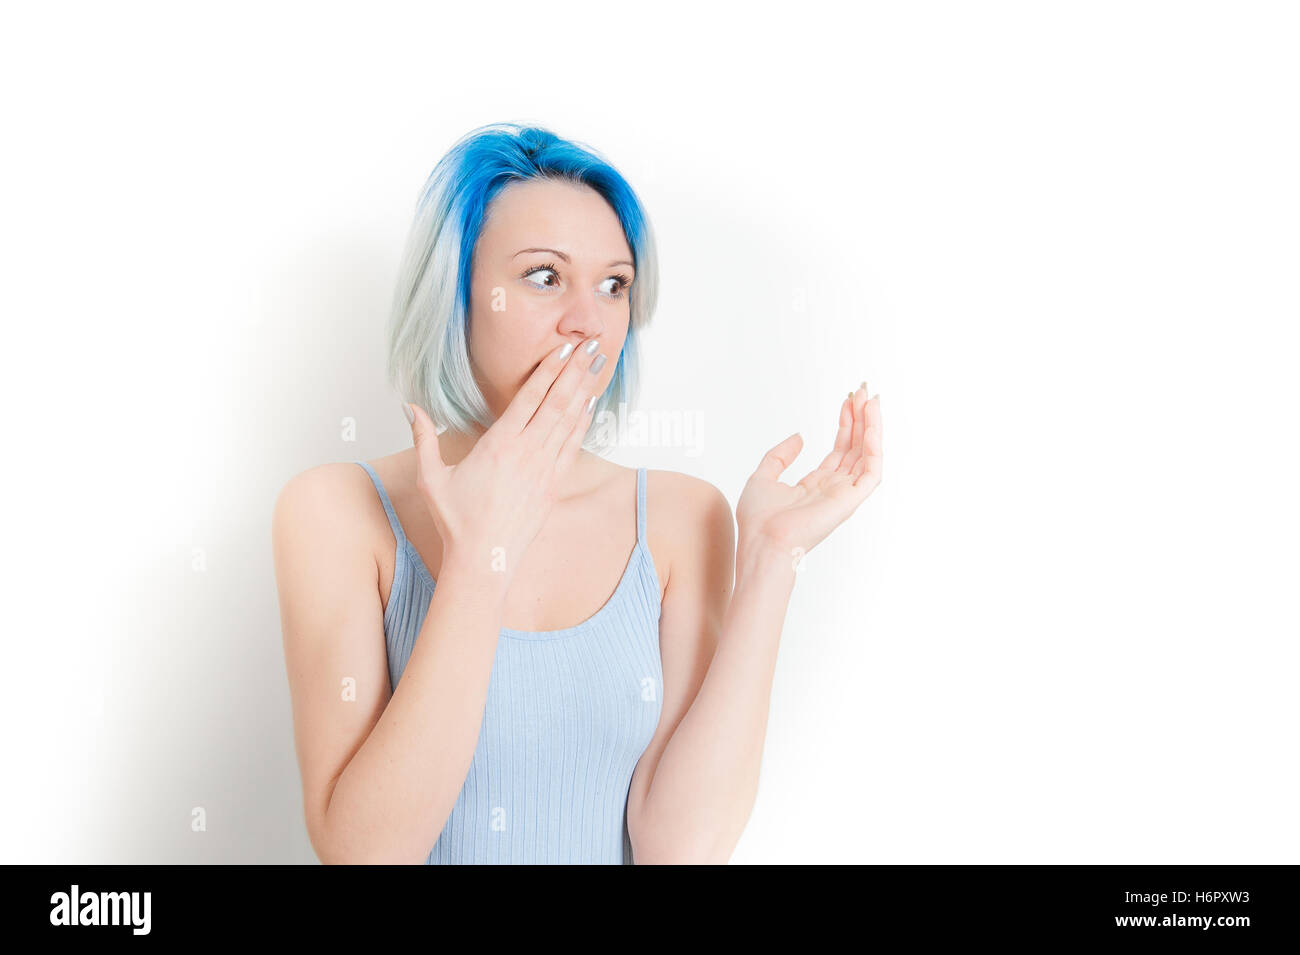 Junge Teen Hipster Frau Porträt, Hand am Mund, erstaunt und überrascht, betrachtet man ihre linke Seite isoliert auf weißem Hintergrund Stockfoto